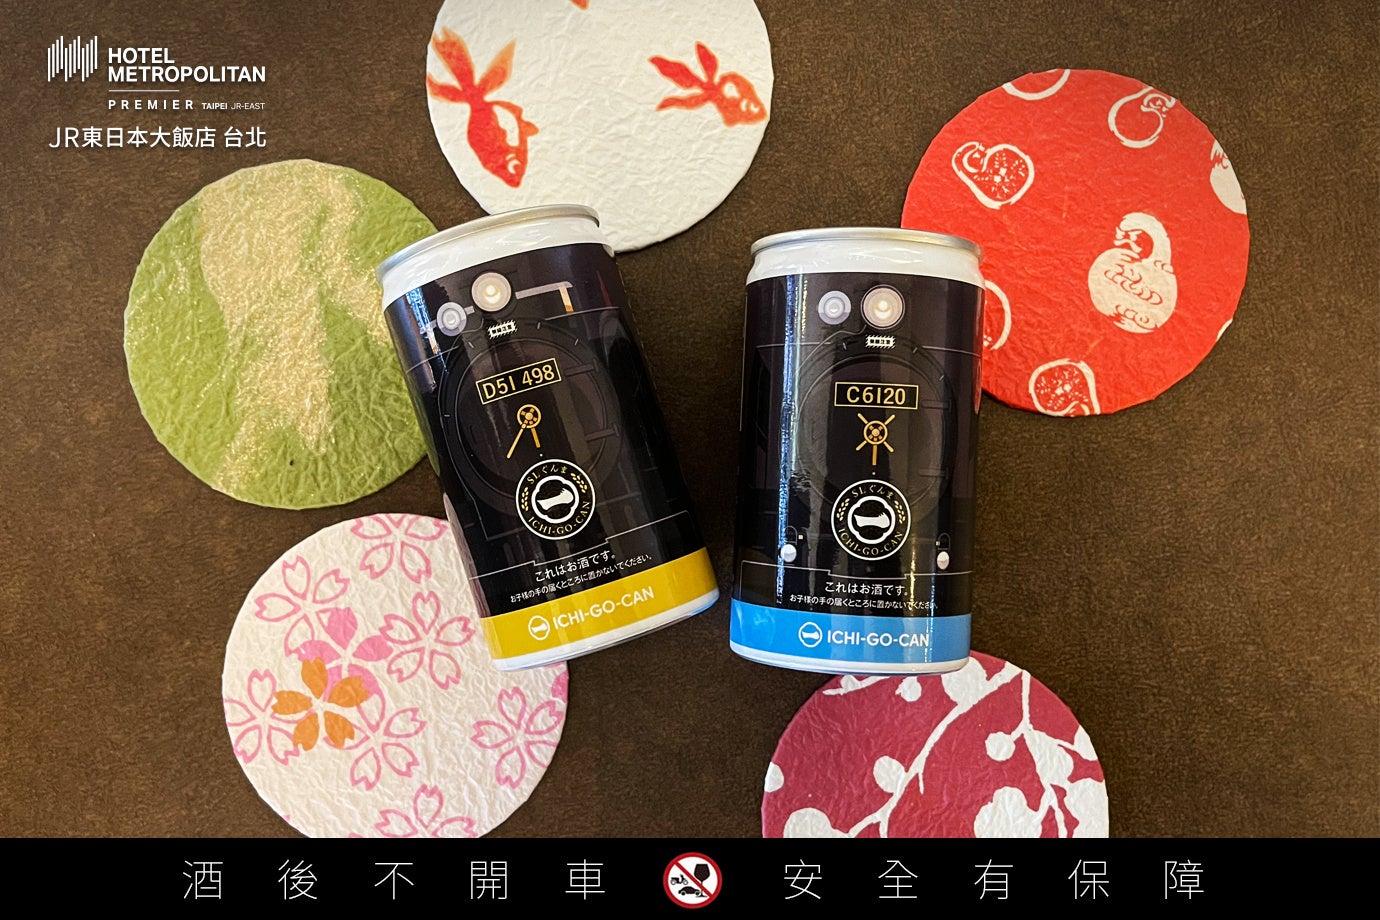 【開業2周年記念】日本酒ICHI-GO-CAN®︎がホテルメトロポリタン プレミア 台北の宿泊プラン特典に。